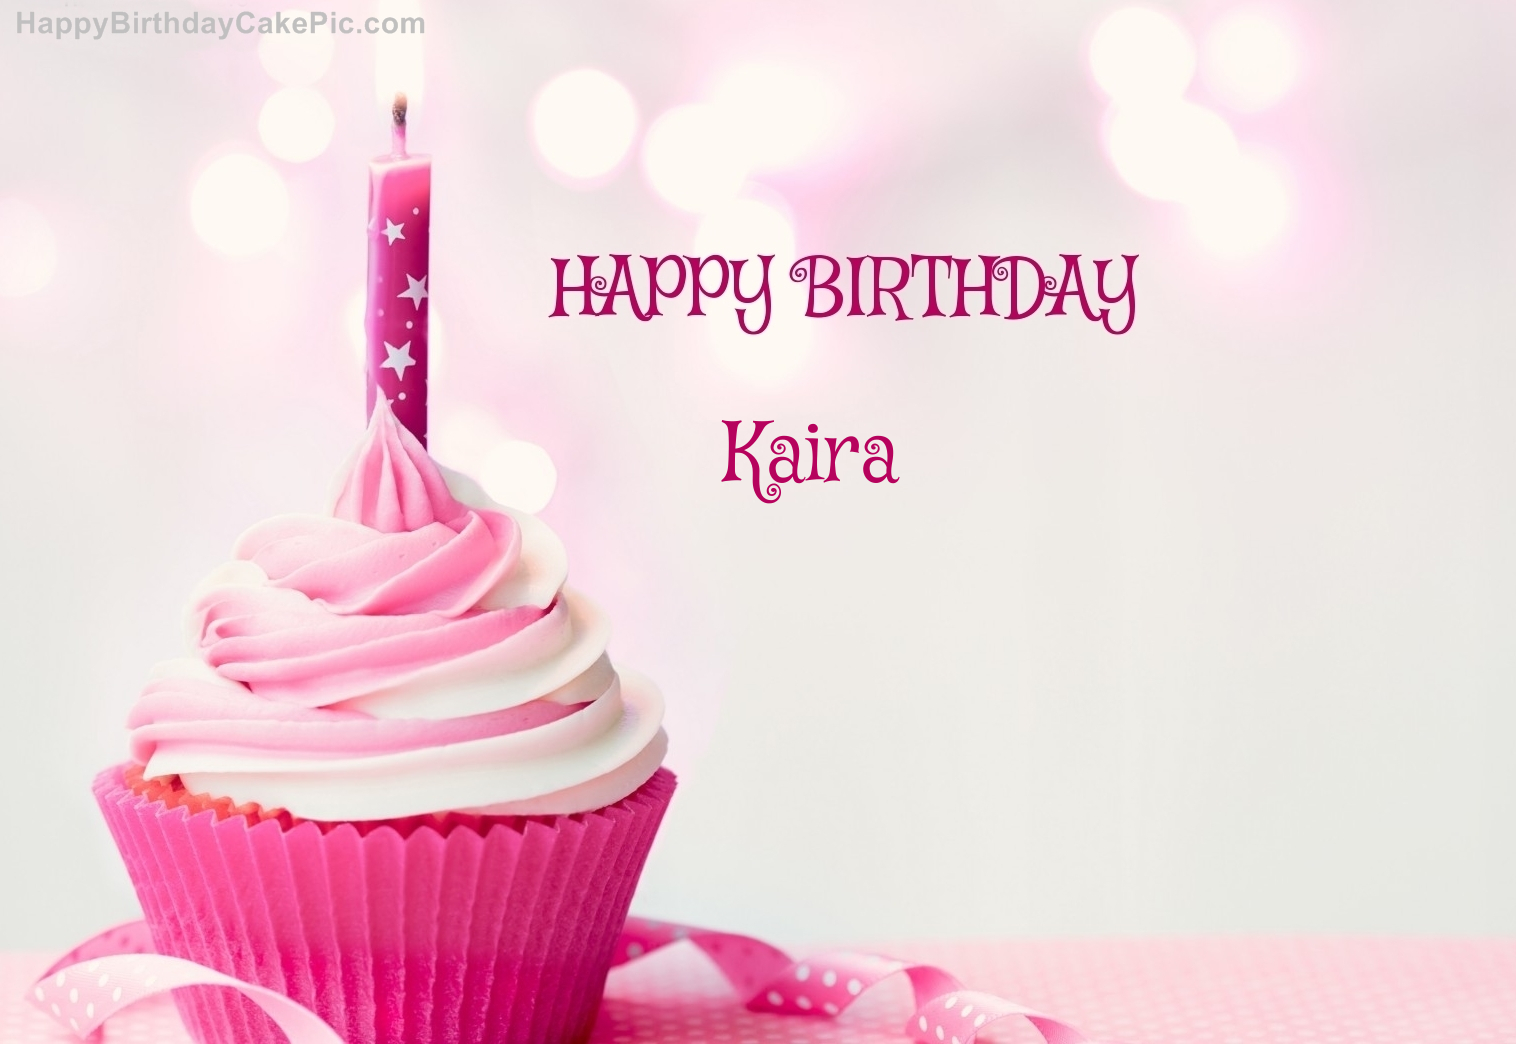 ❤️ Princess Birthday Cake For Kiara